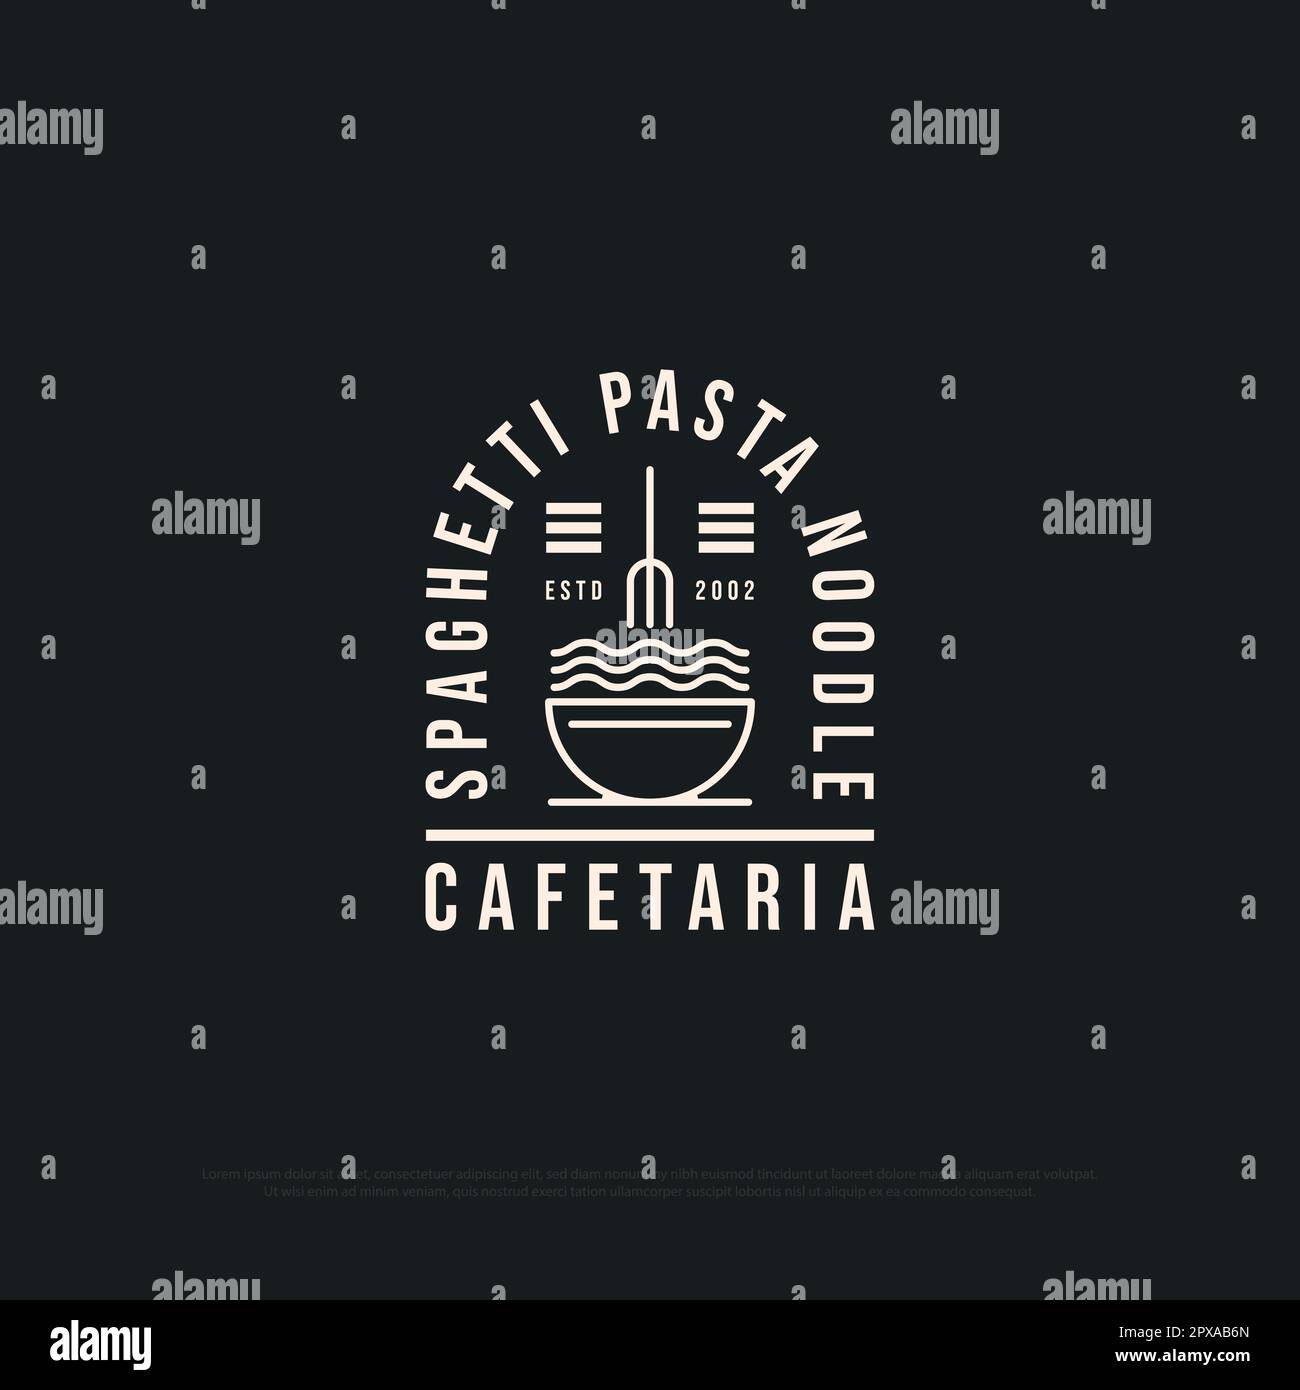 Spaghetti Pasta Noodle Shop logo design Inspiration, disegno vettoriale della pasta italiana con simbolo del tratto di contorno Illustrazione Vettoriale